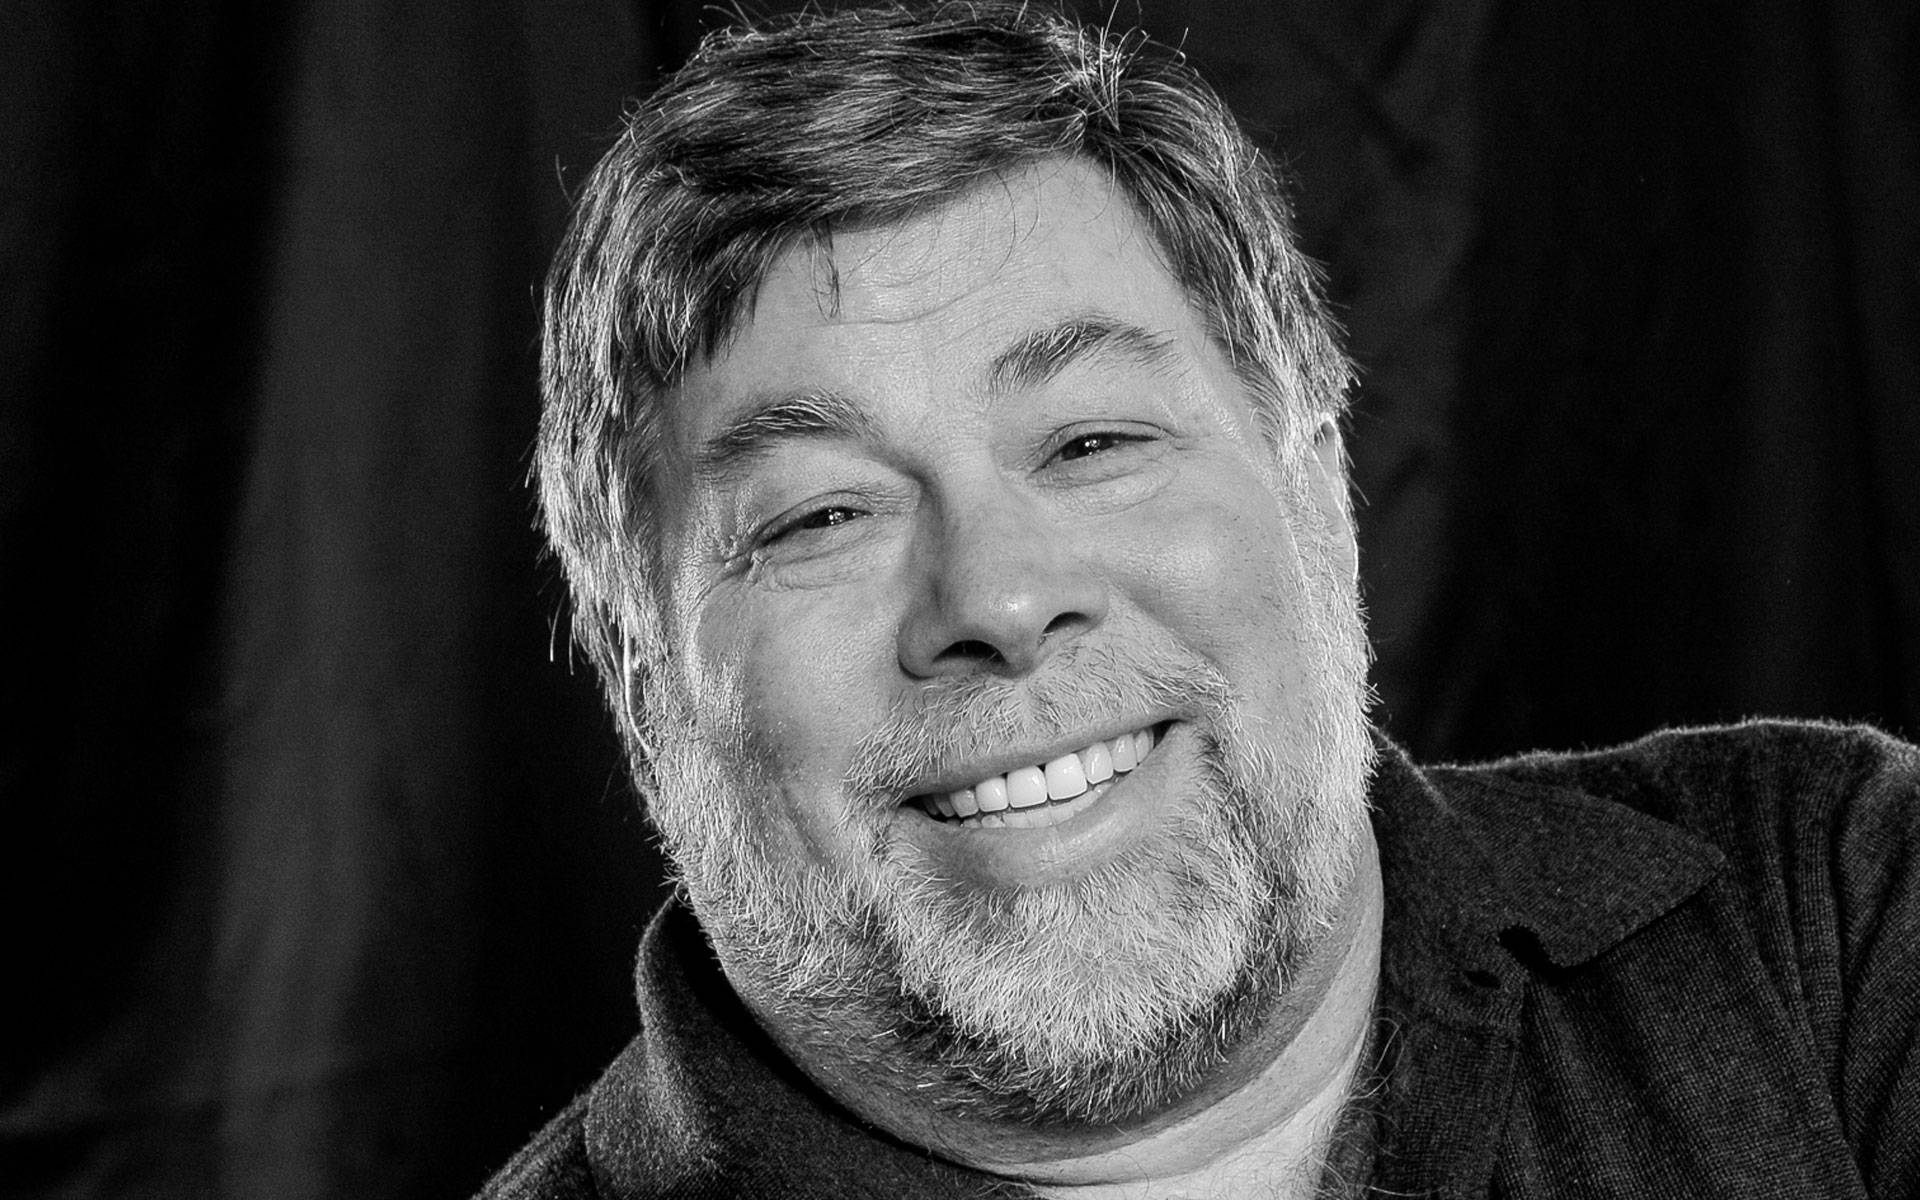 Applemitbegründer Steve Wozniak In Graustufen Wallpaper